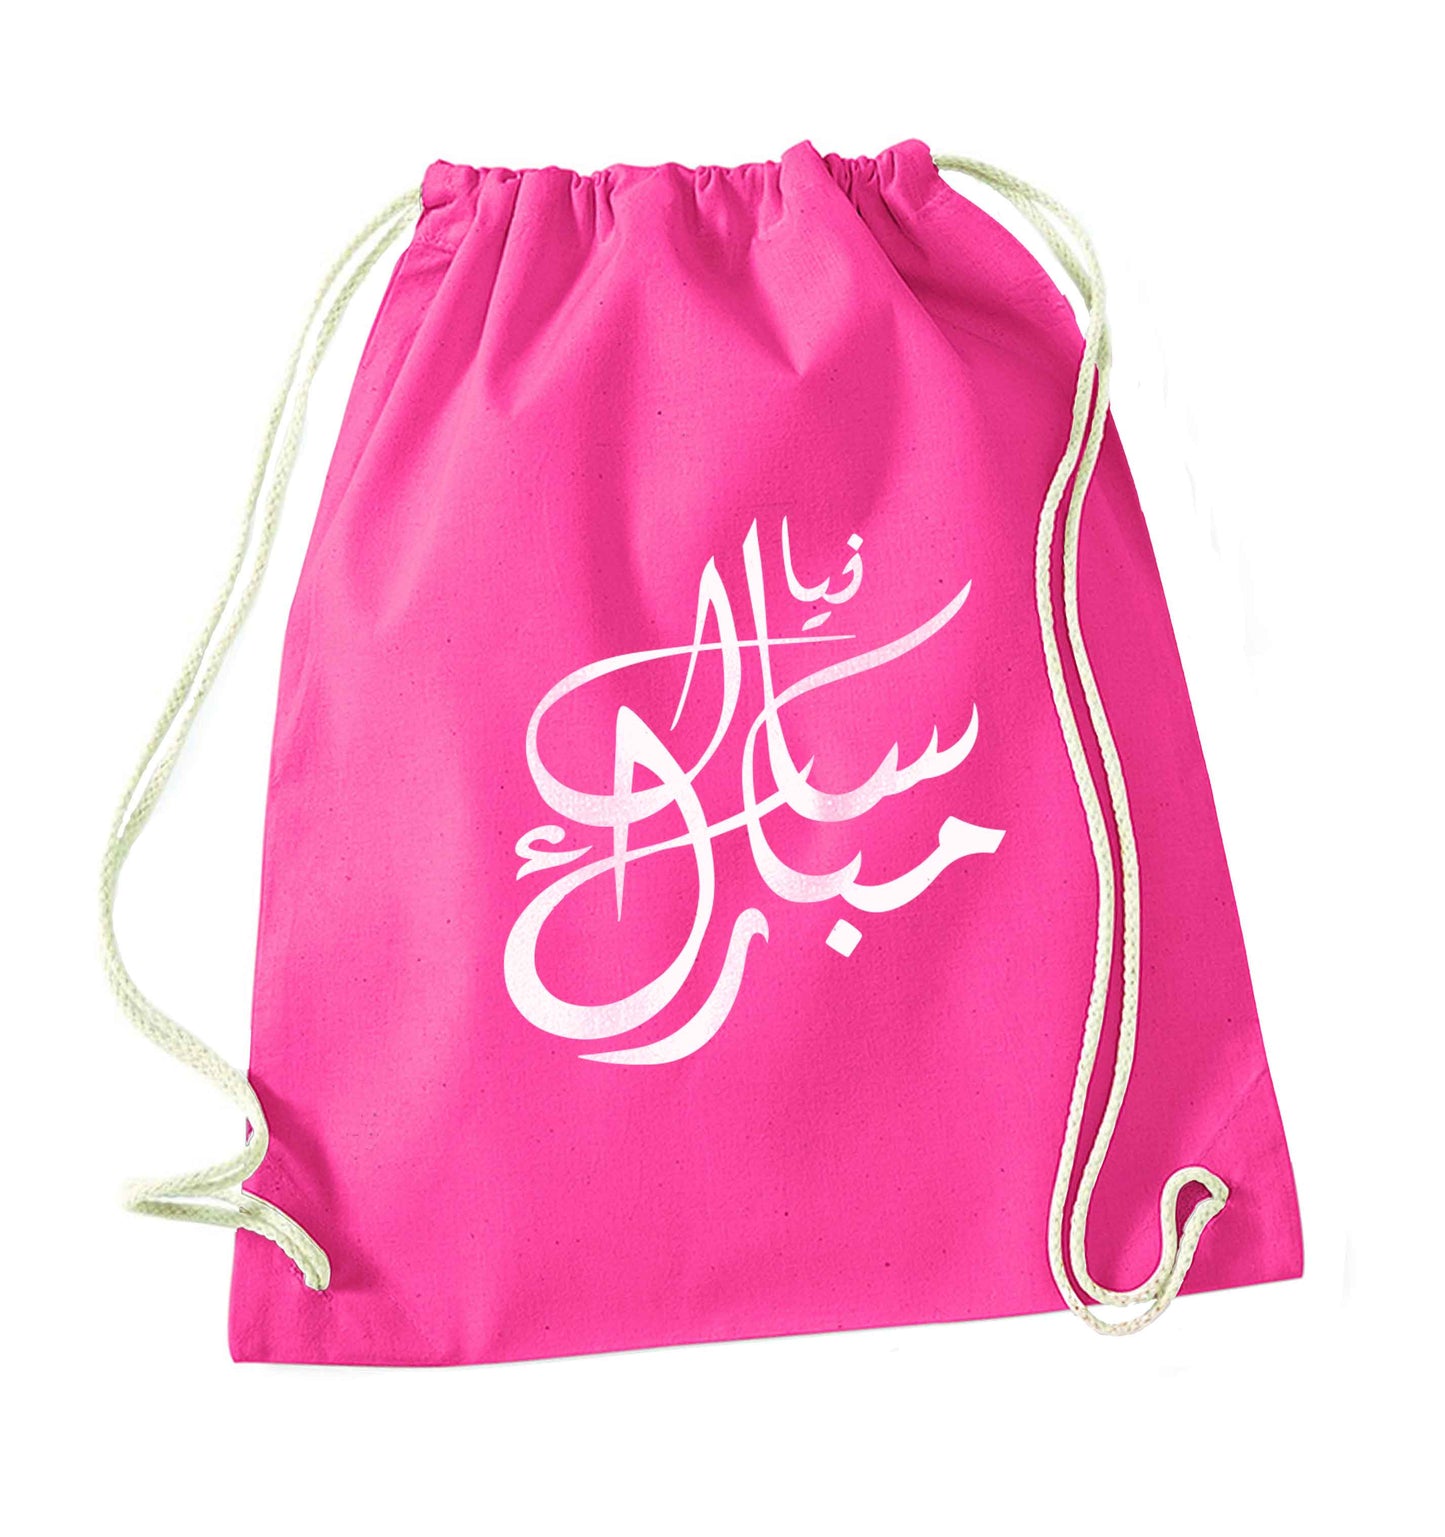 Urdu Naya saal mubarak pink drawstring bag